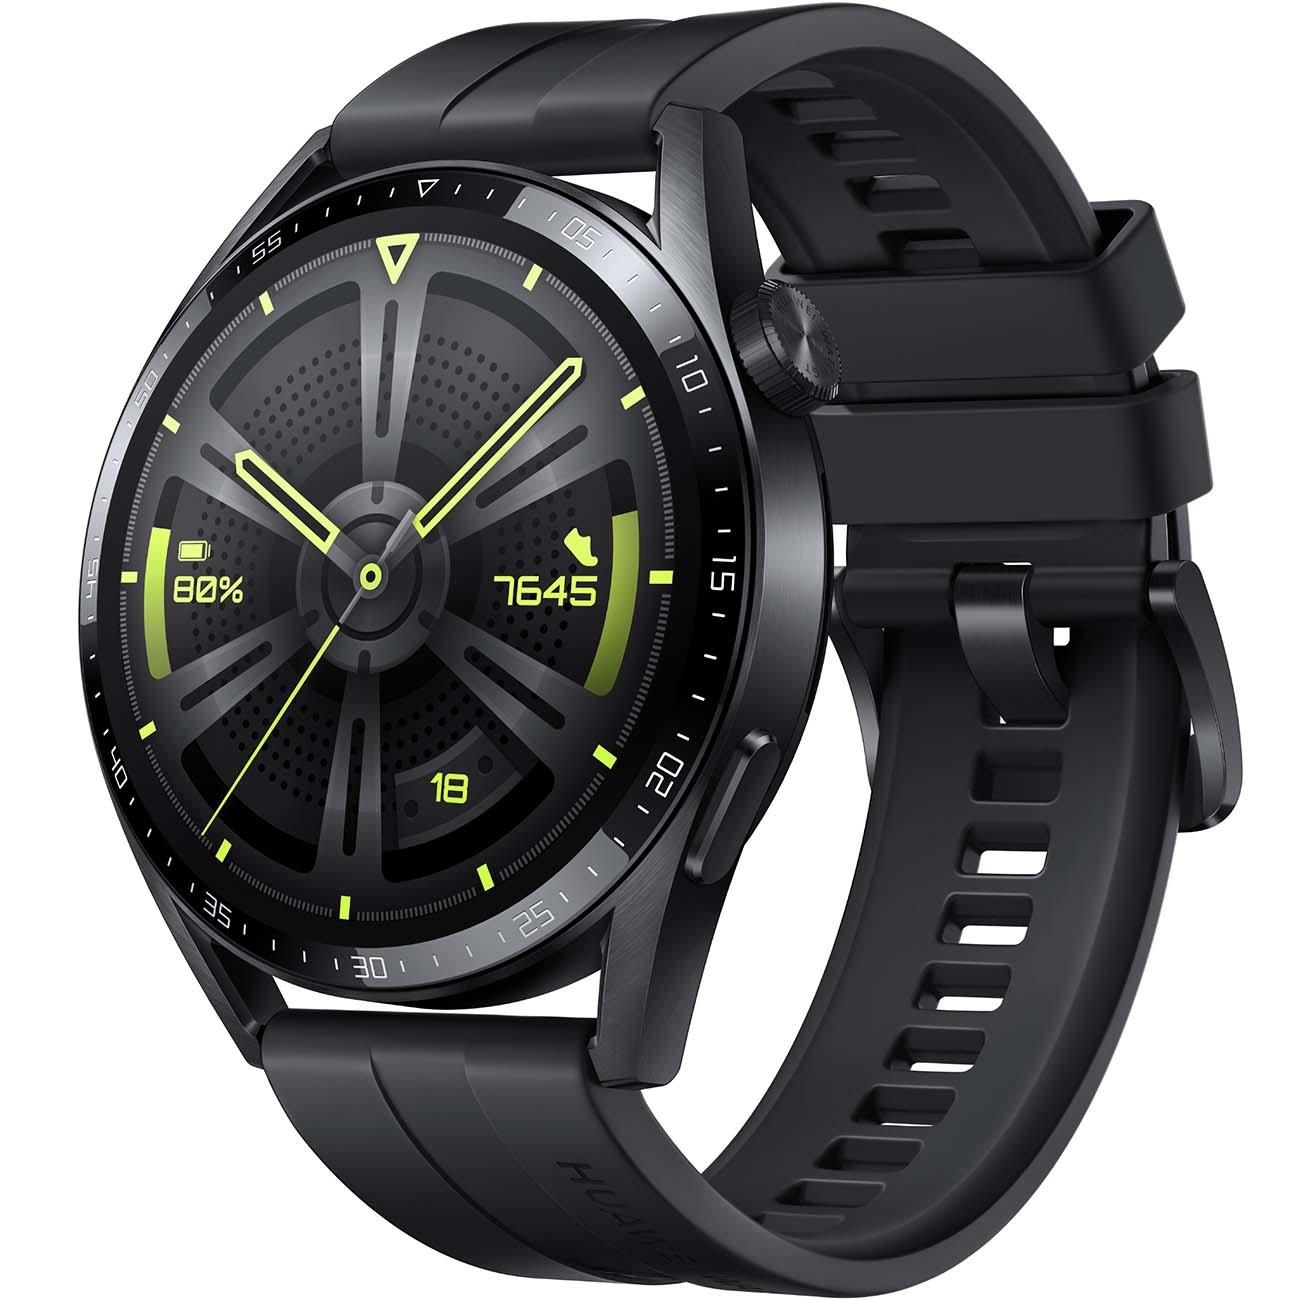 Смарт часы Huawei watch gt 3 black fluoroelastomer strap (jupiter-b29s) watch gt 3 black fluoroelastomer strap (jupiter-b29s) - фото 1